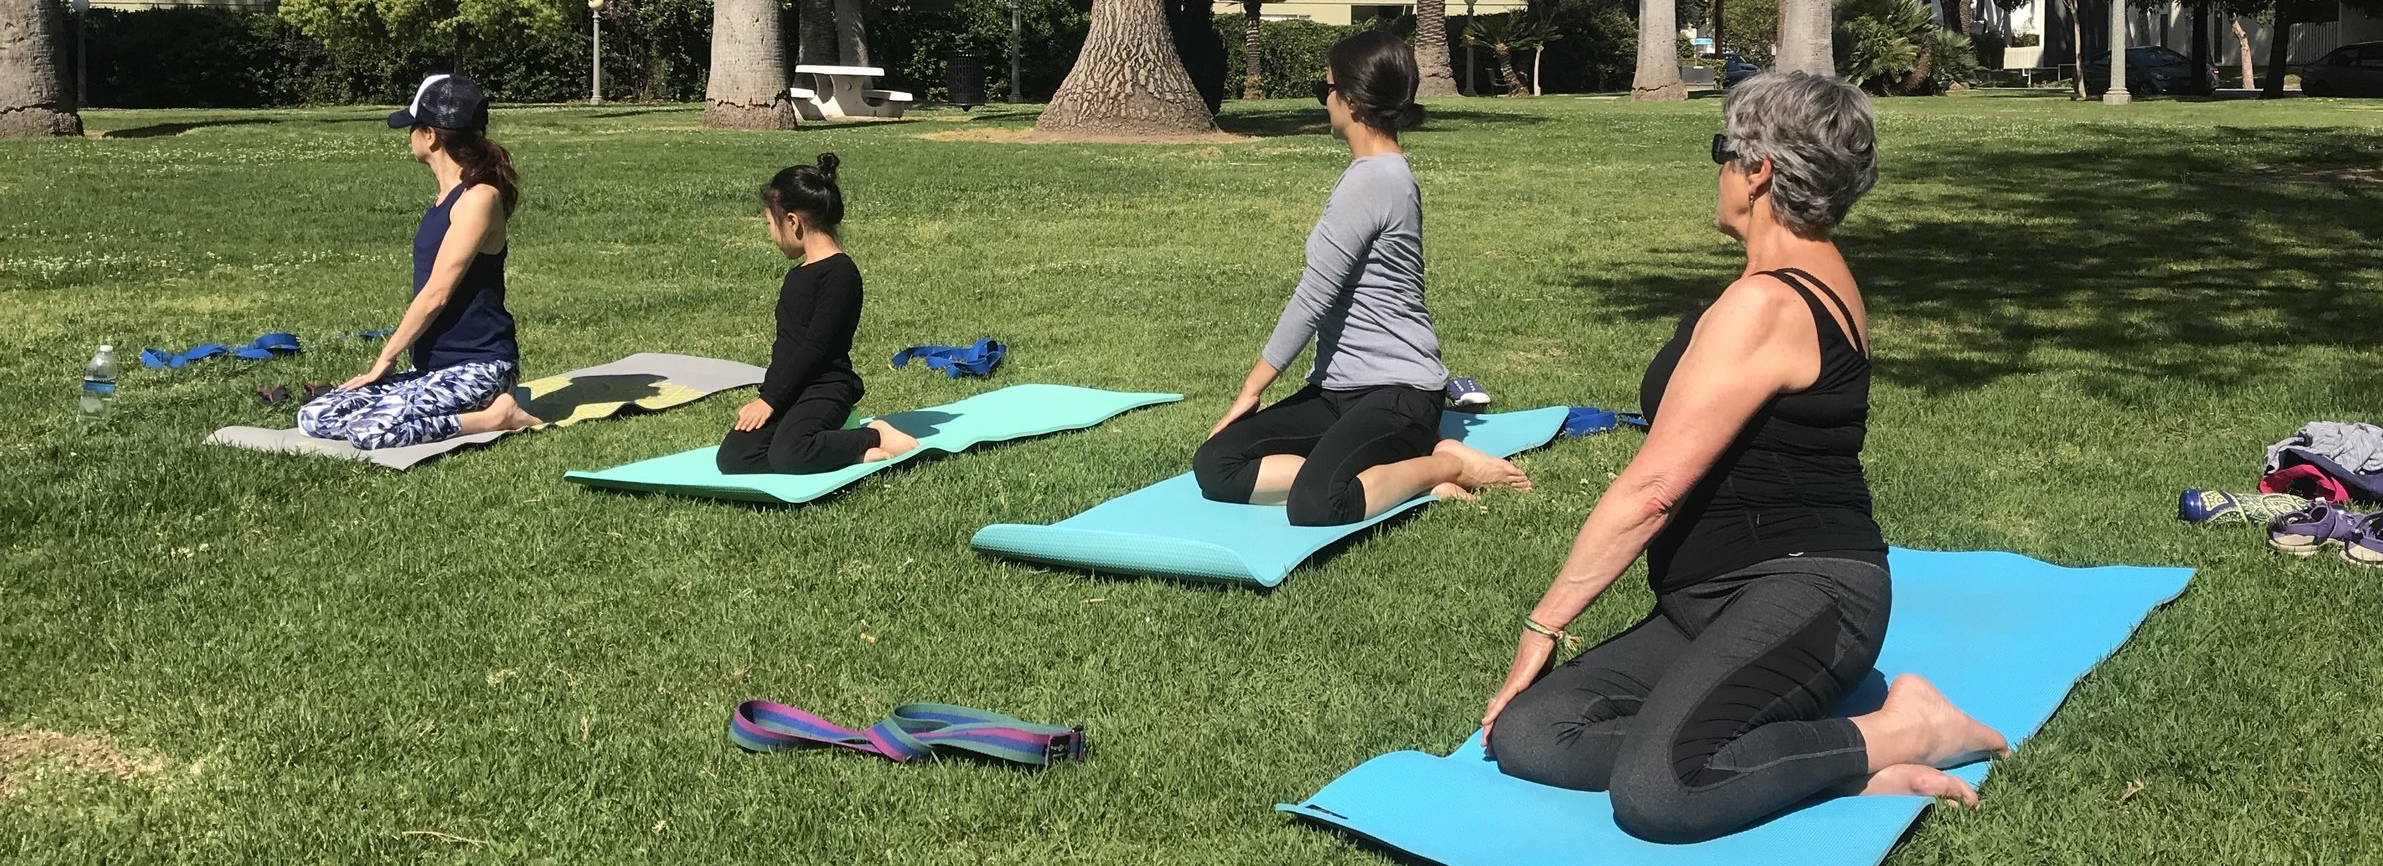 personal yoga mat